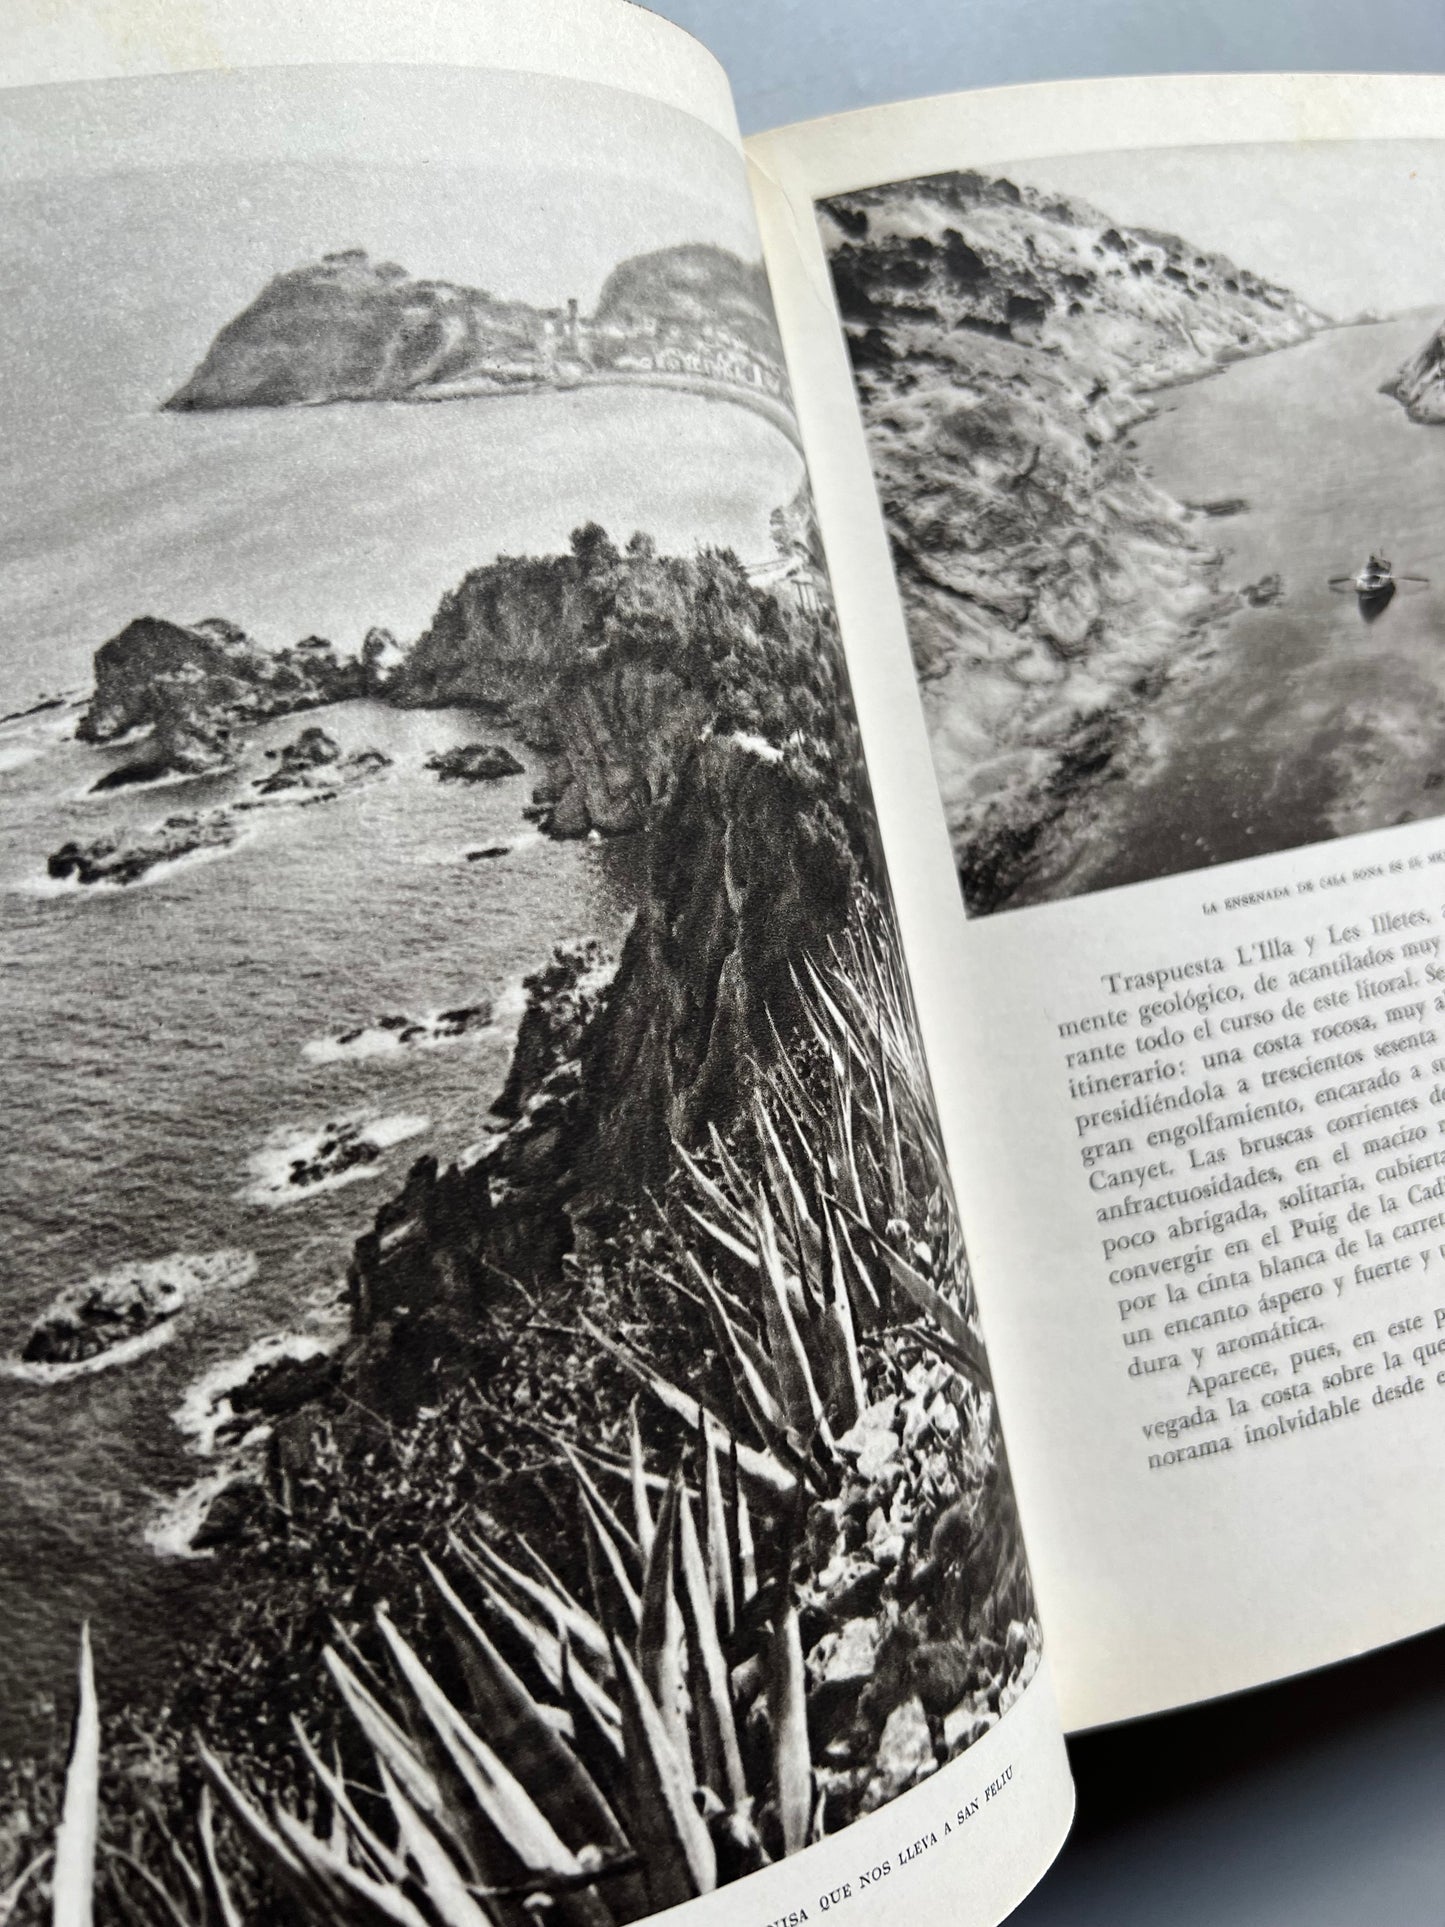 Guía de la Costa Brava, José Pla - Ediciones destino, 1955